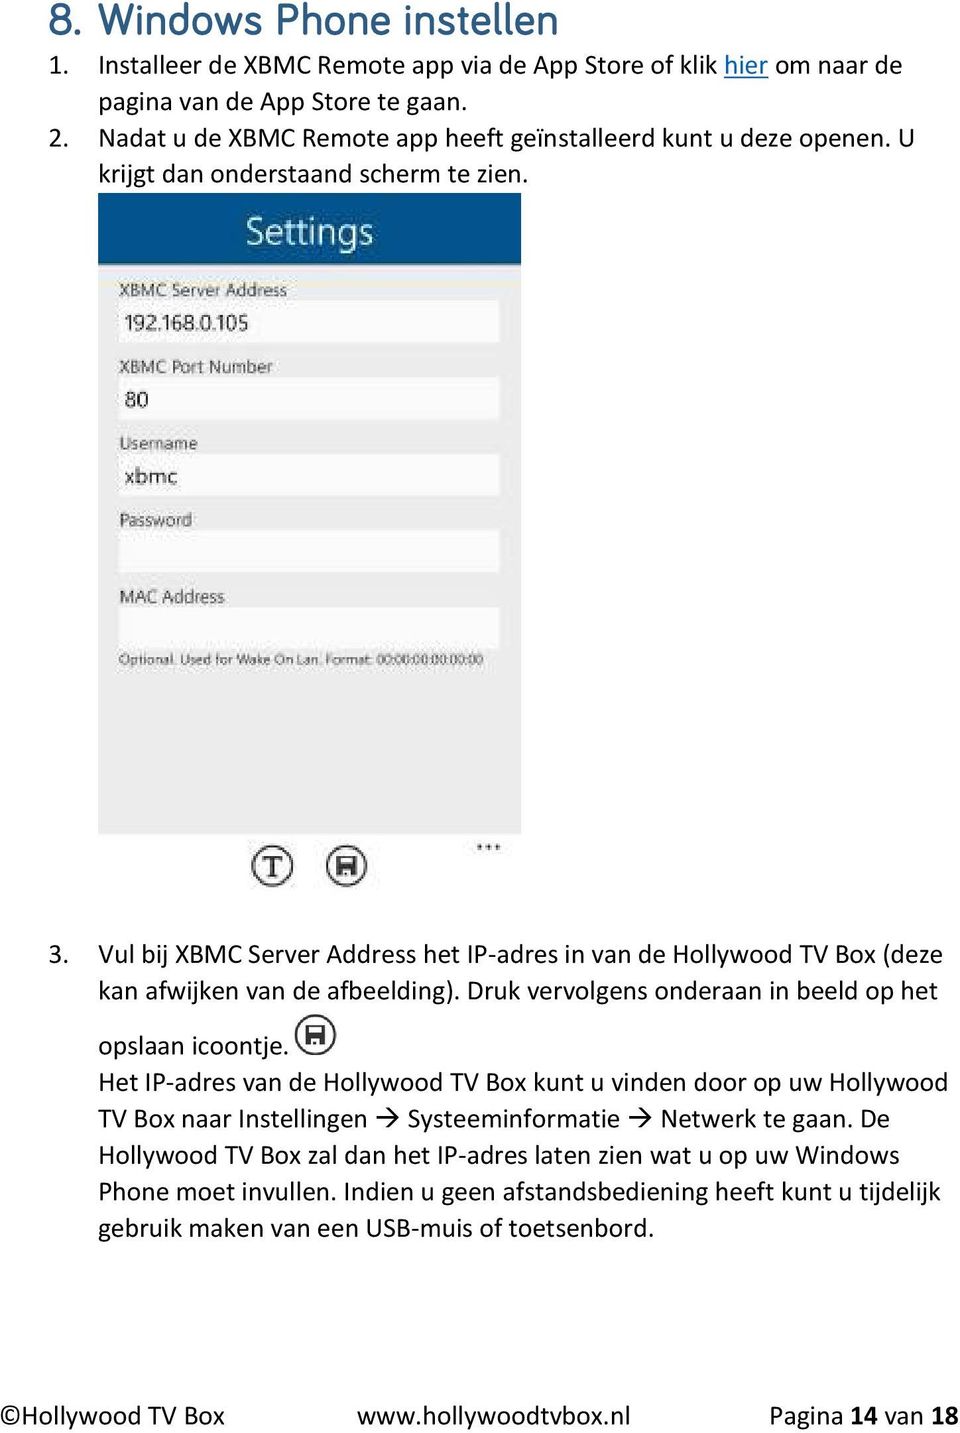 Vul bij XBMC Server Address het IP-adres in van de Hollywood TV Box (deze kan afwijken van de afbeelding). Druk vervolgens onderaan in beeld op het opslaan icoontje.